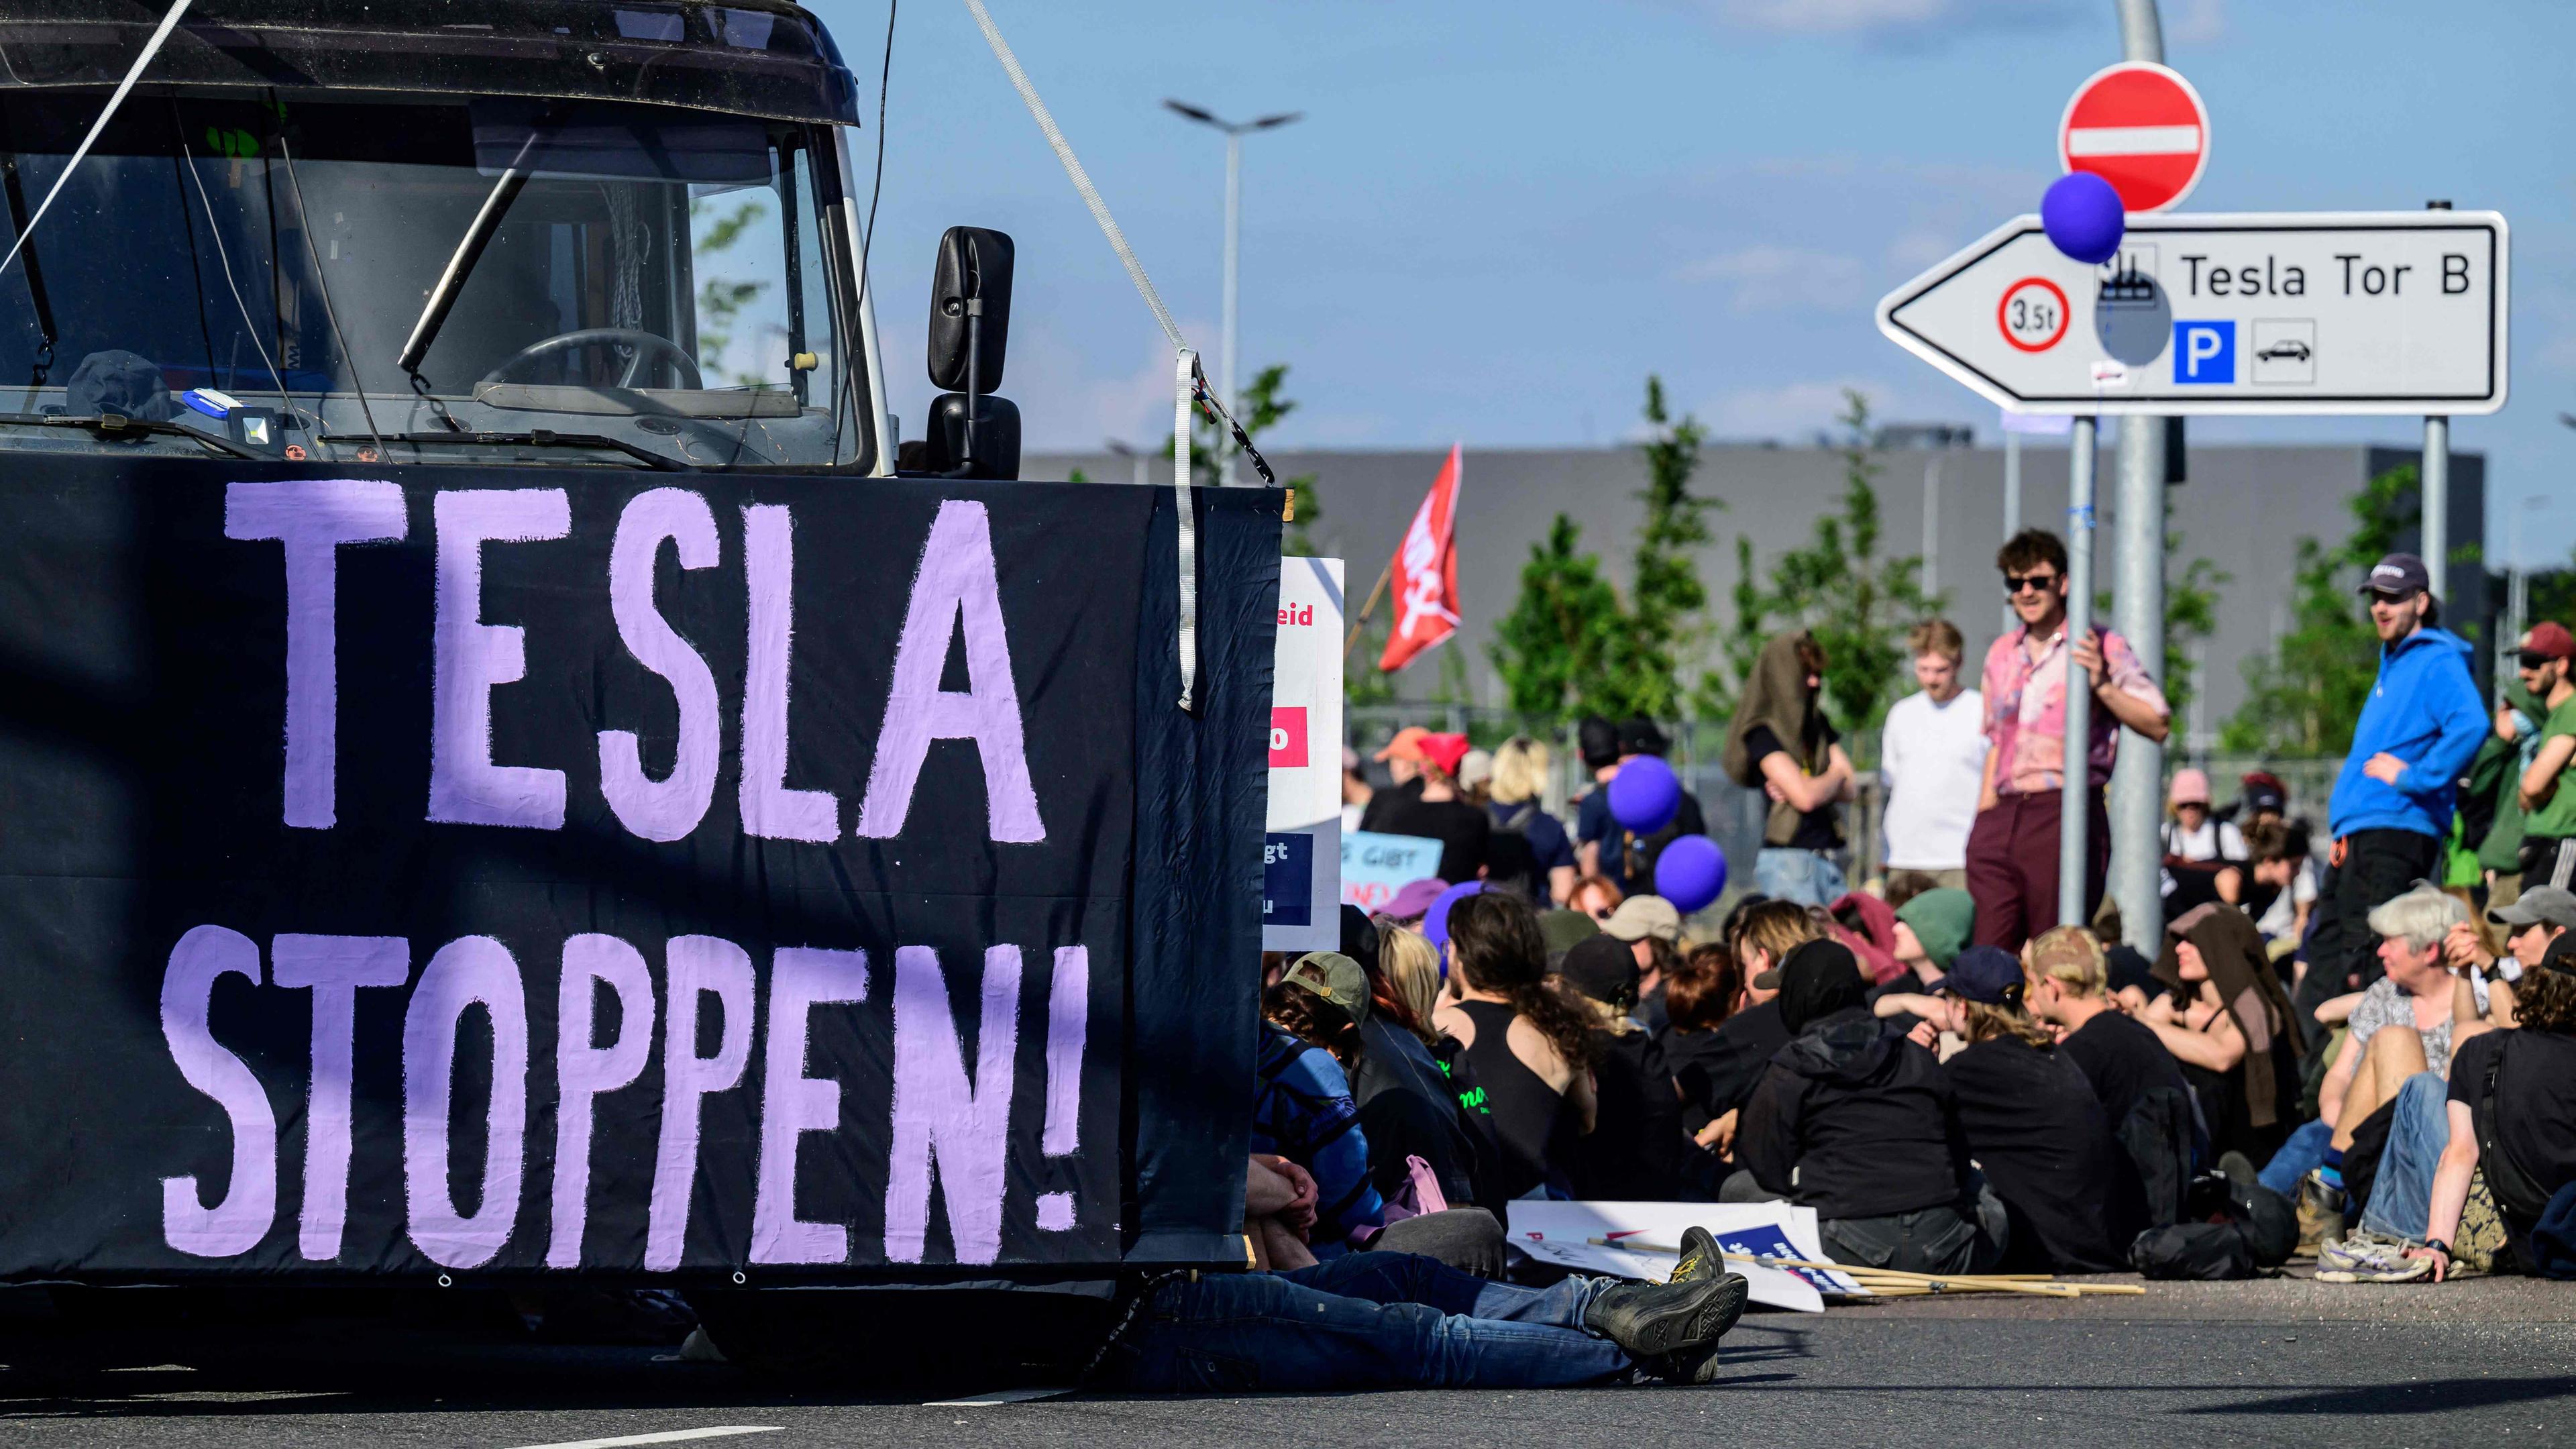 Klimaaktivisten sitzen auf dem Boden und blockieren das Tesla Gelände in Grünheide. Links ist ein Banner der Aufschrift "TESLA STOPPEN" vor einen LKW gespannt.